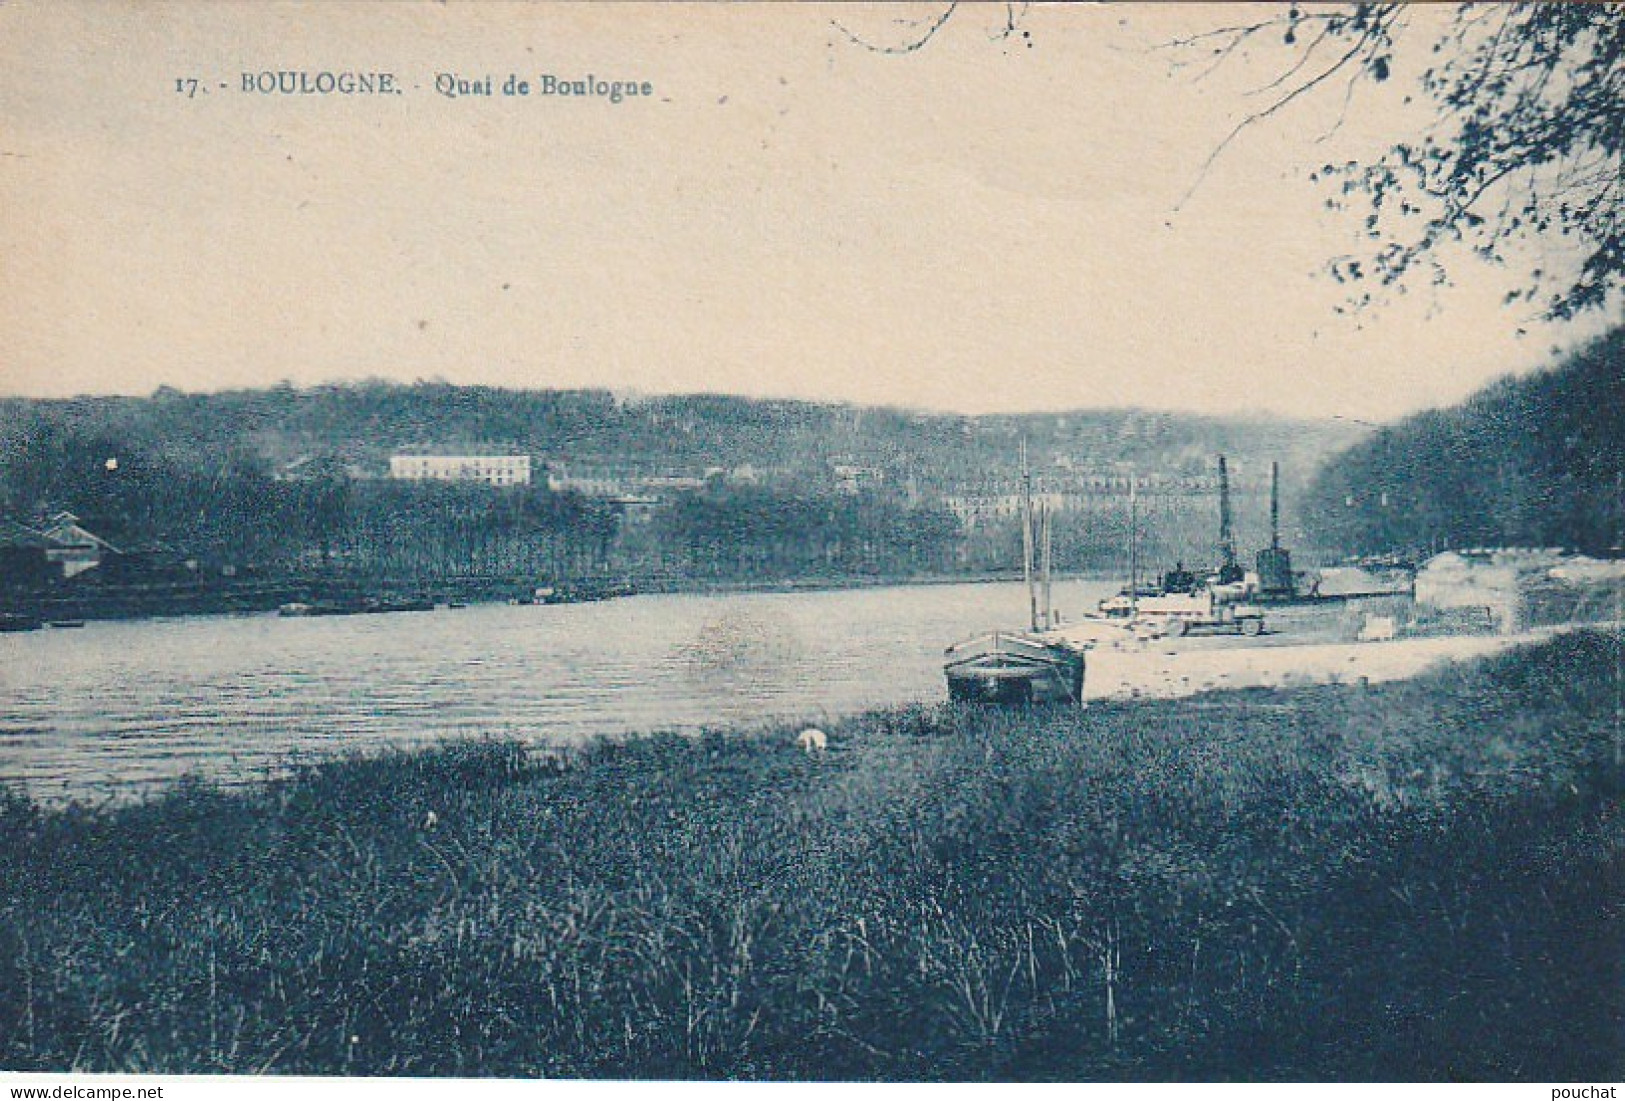 MO 4-(92) BOULOGNE - QUAI DE BOULOGNE - 2 SCANS  - Boulogne Billancourt